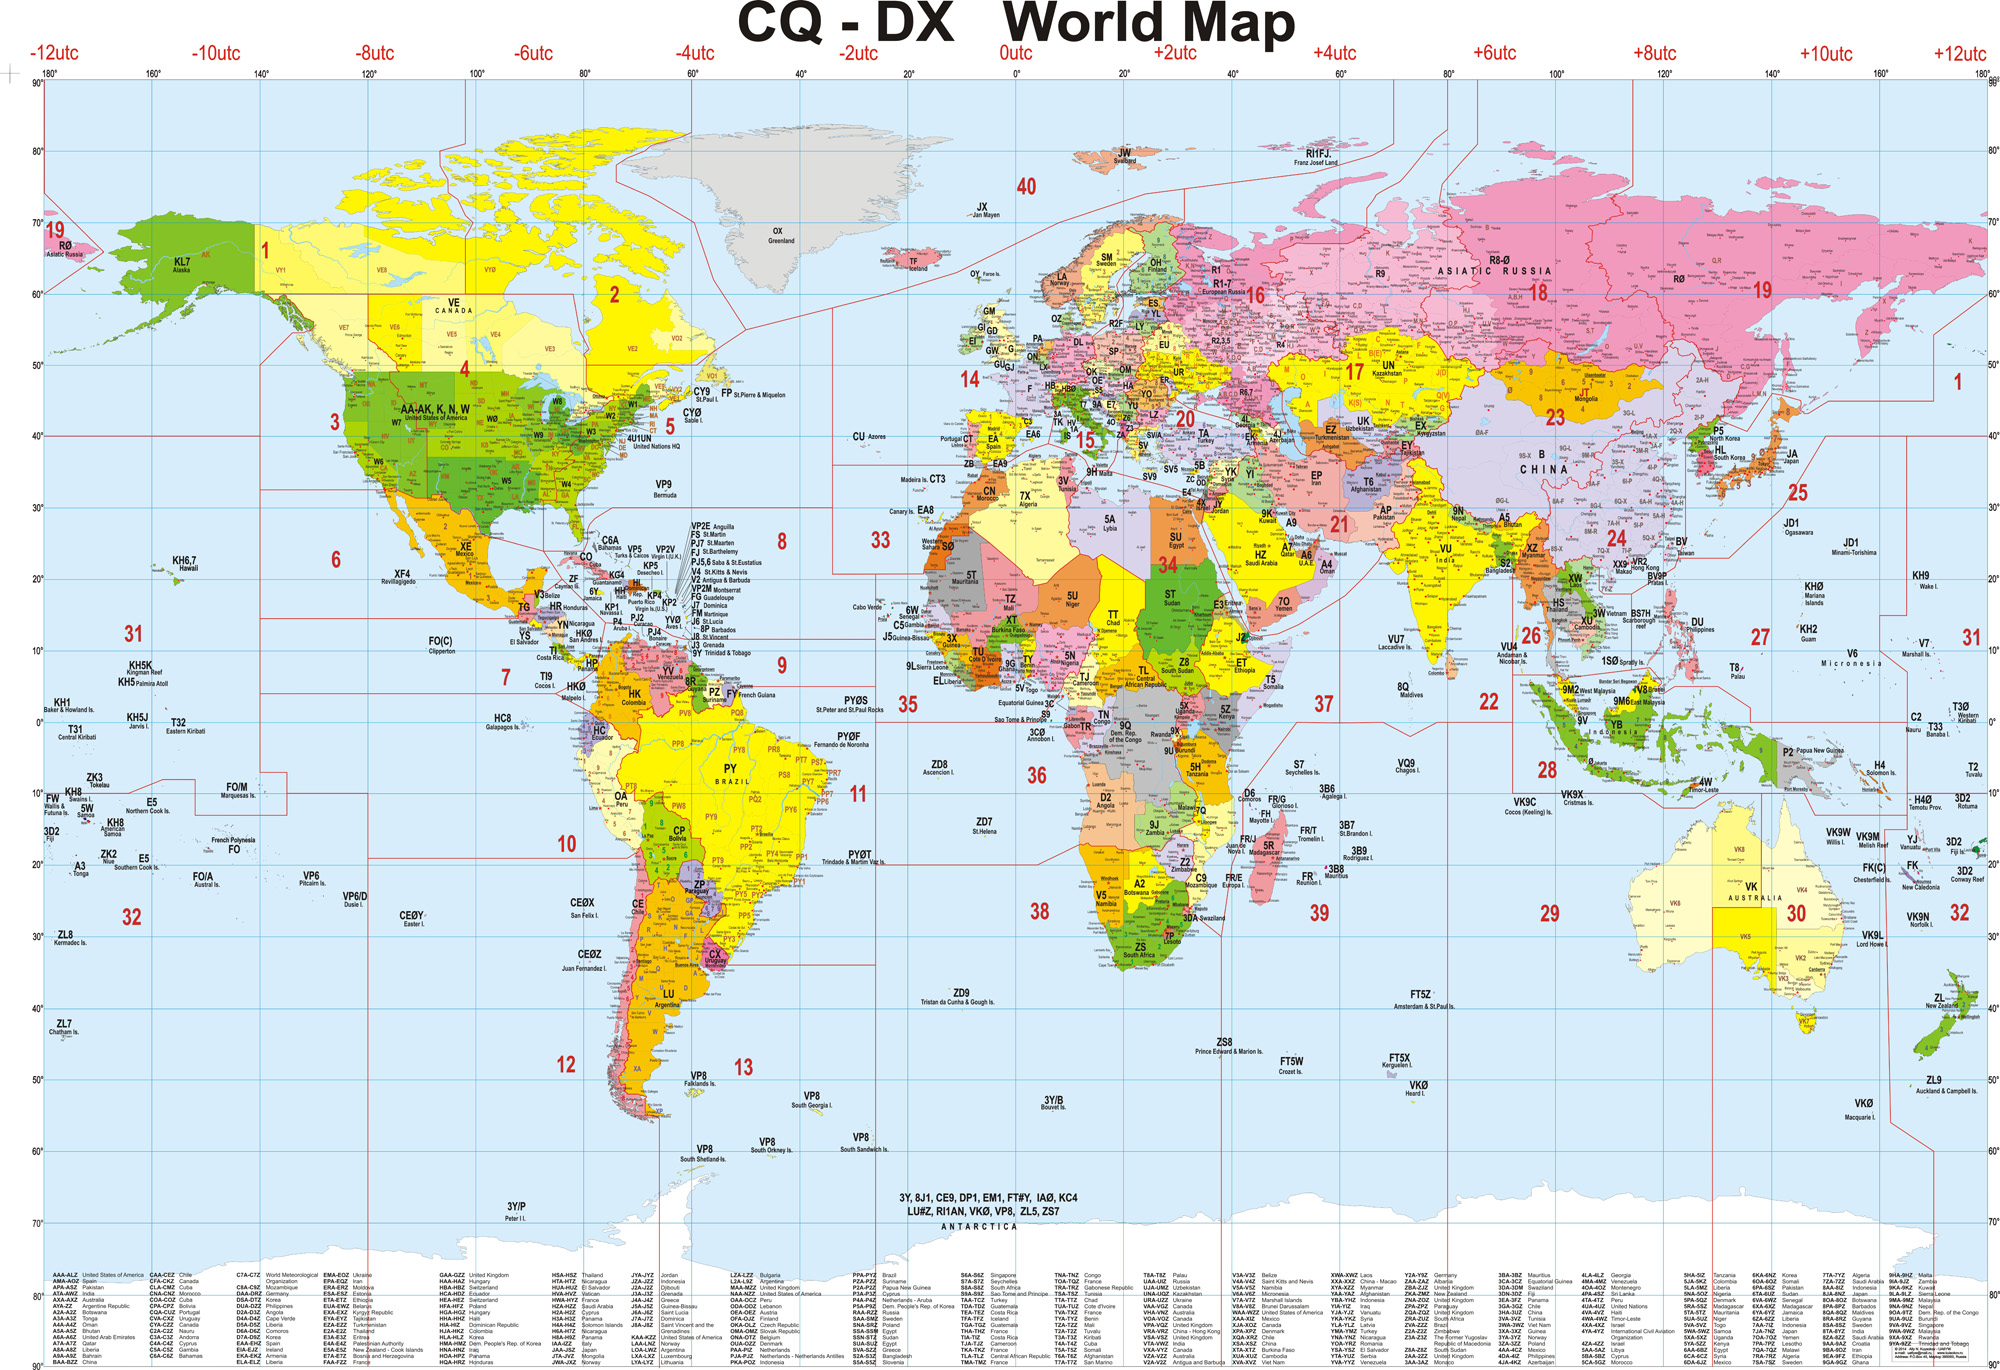 Mapa CQ-DX World Map  radioaficionados HAM RADIO